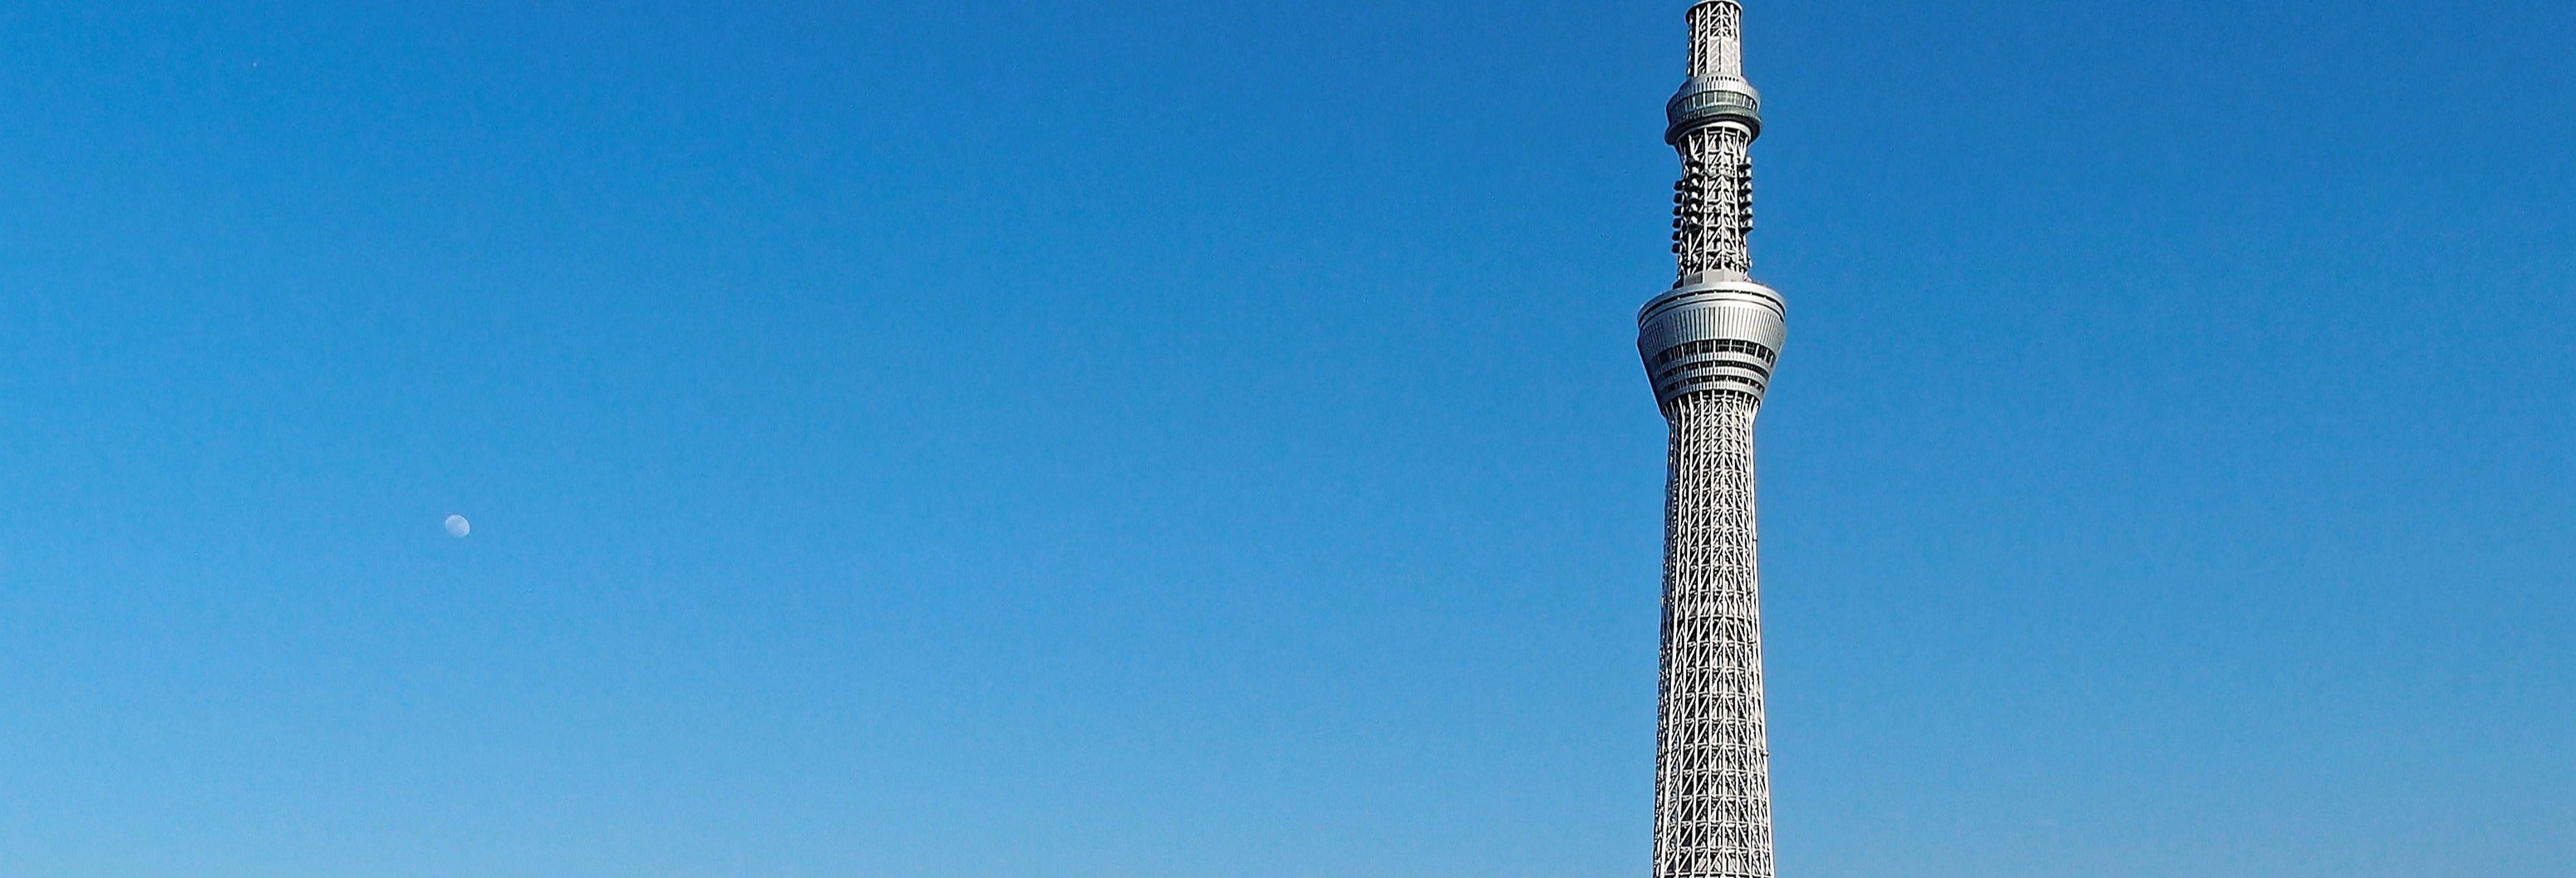 Tokyo Skytree Observation Deck